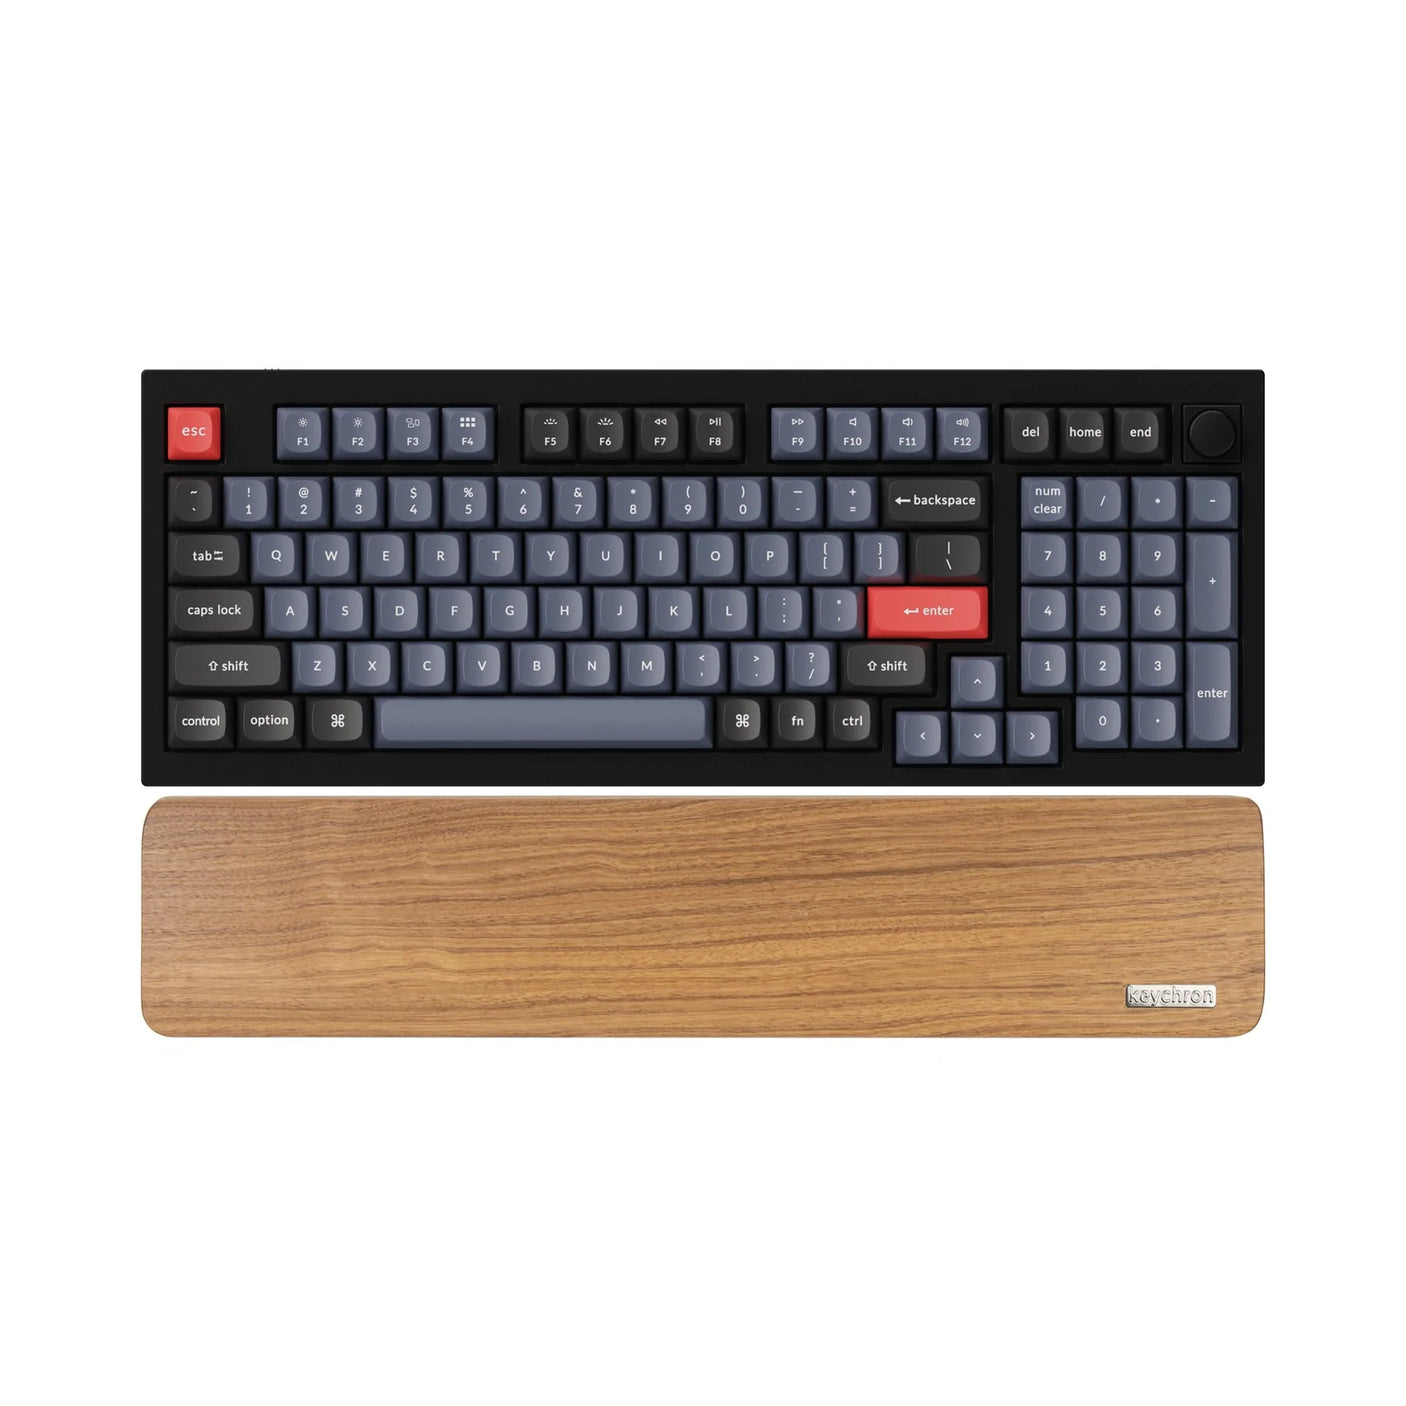 Keychron Keyboard Wooden Palm Rest - Keychron